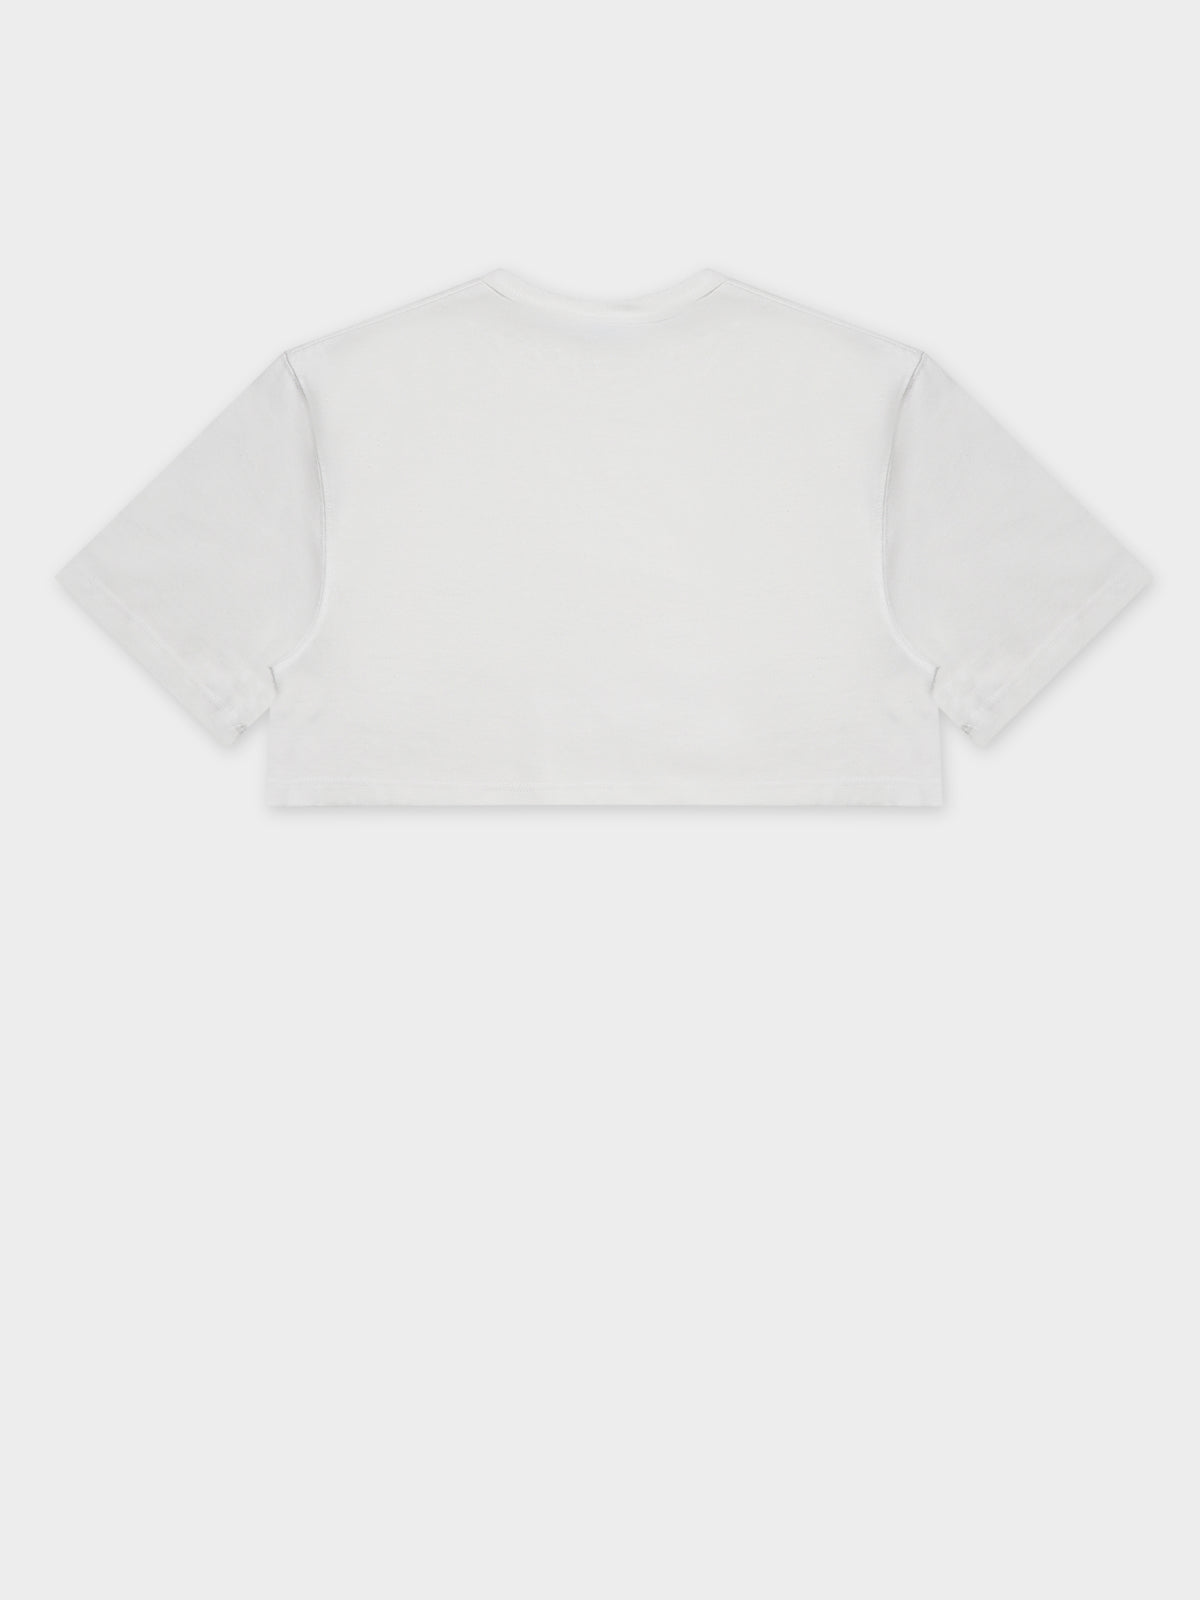 HT Tonal Crop T-Shirt in White